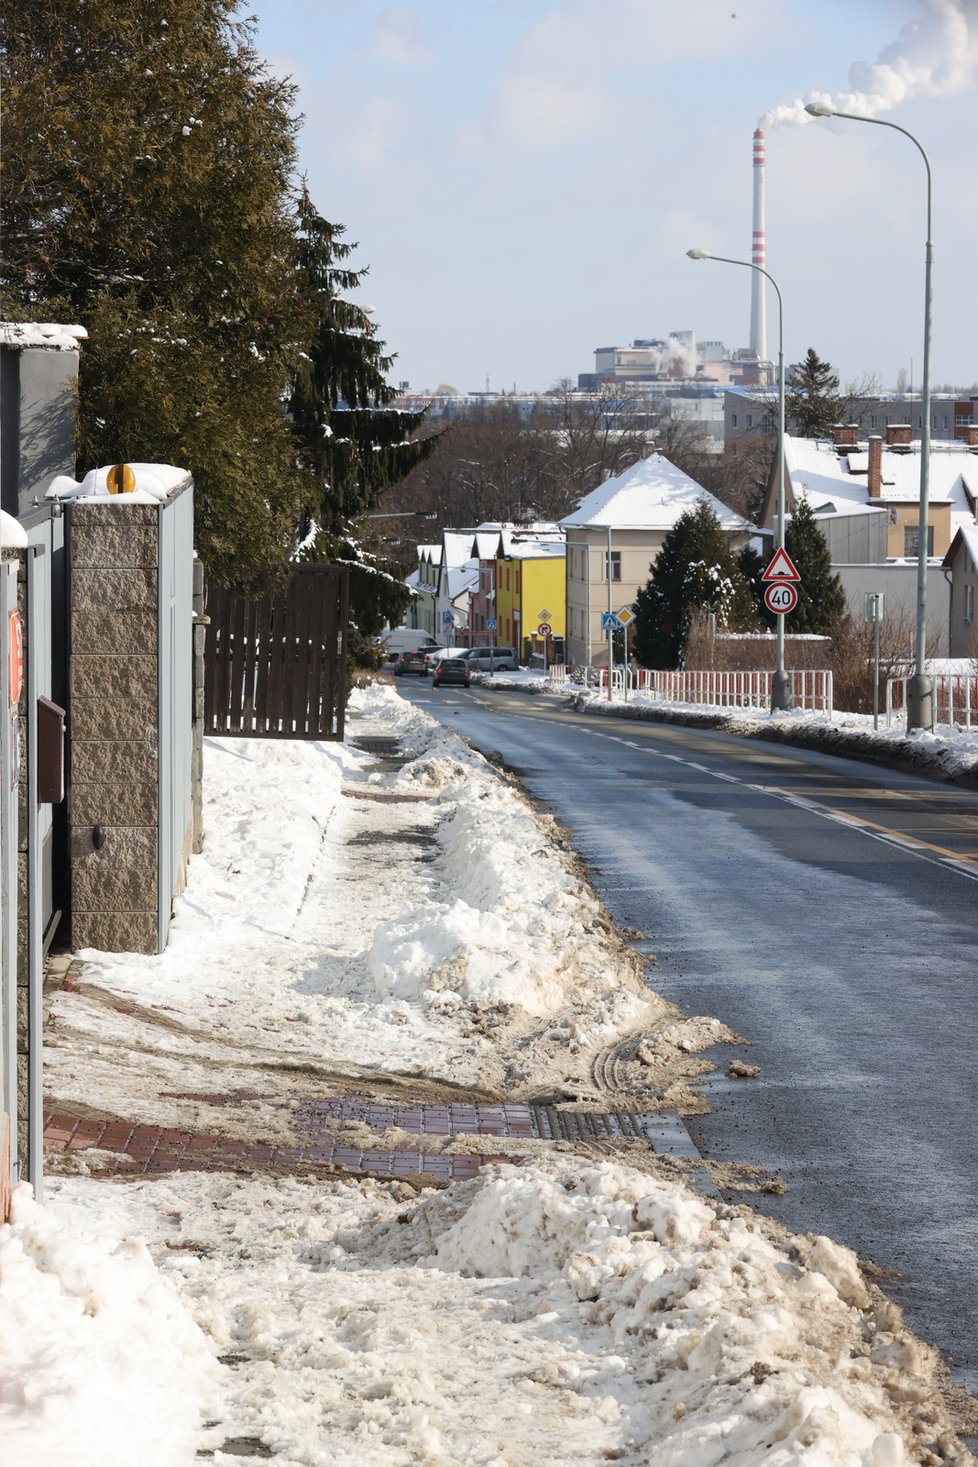 Únor 2021: Zasněžená Praha dělá problémy chodcům. 1 200 metačů se sice o chodníky stará, kvůli sněhu a námraze však kloužou dál.